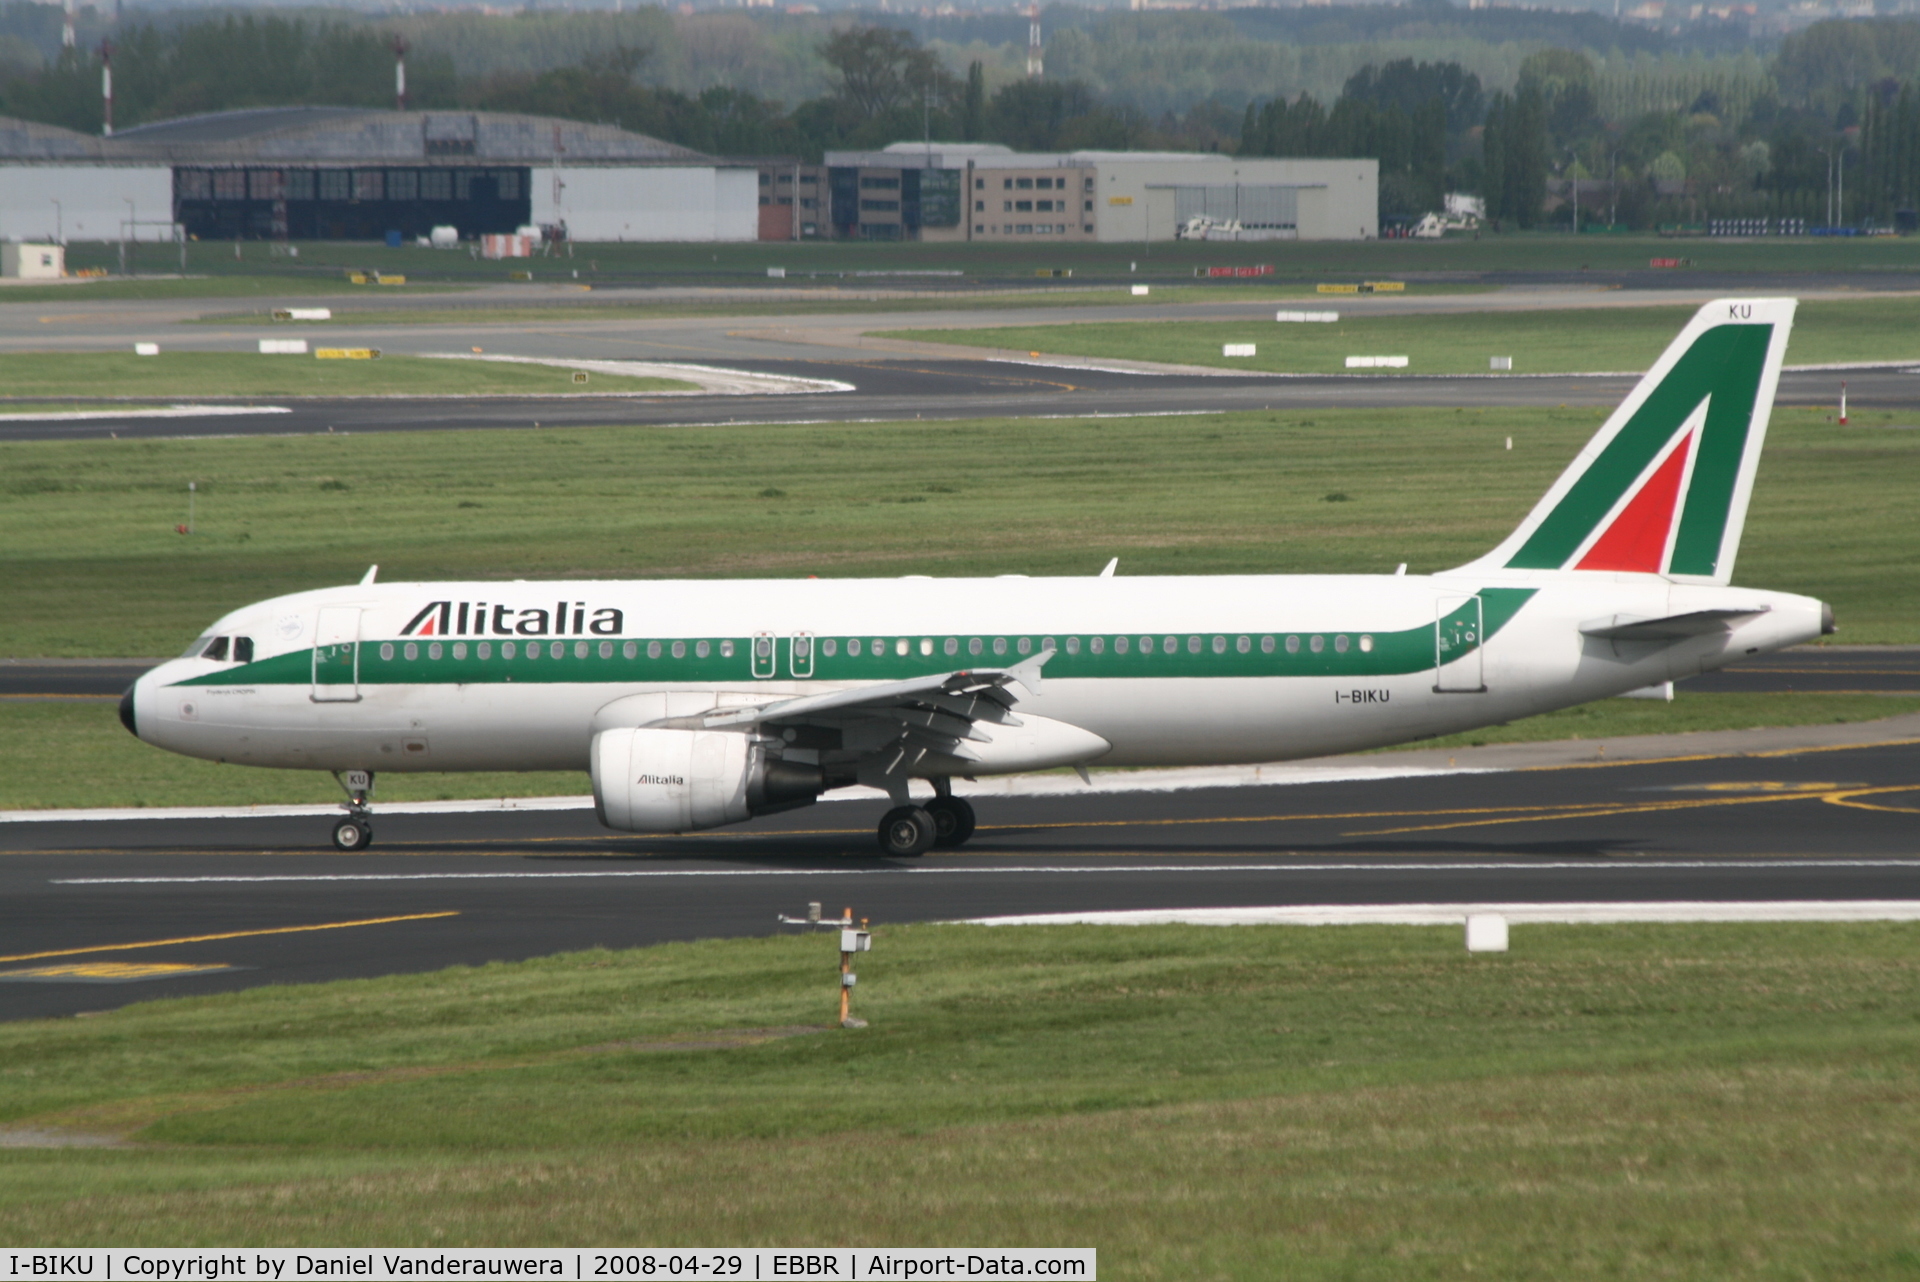 I-BIKU, 2000 Airbus A320-214 C/N 1217, arrival of flight AZ150 to rwy 25L